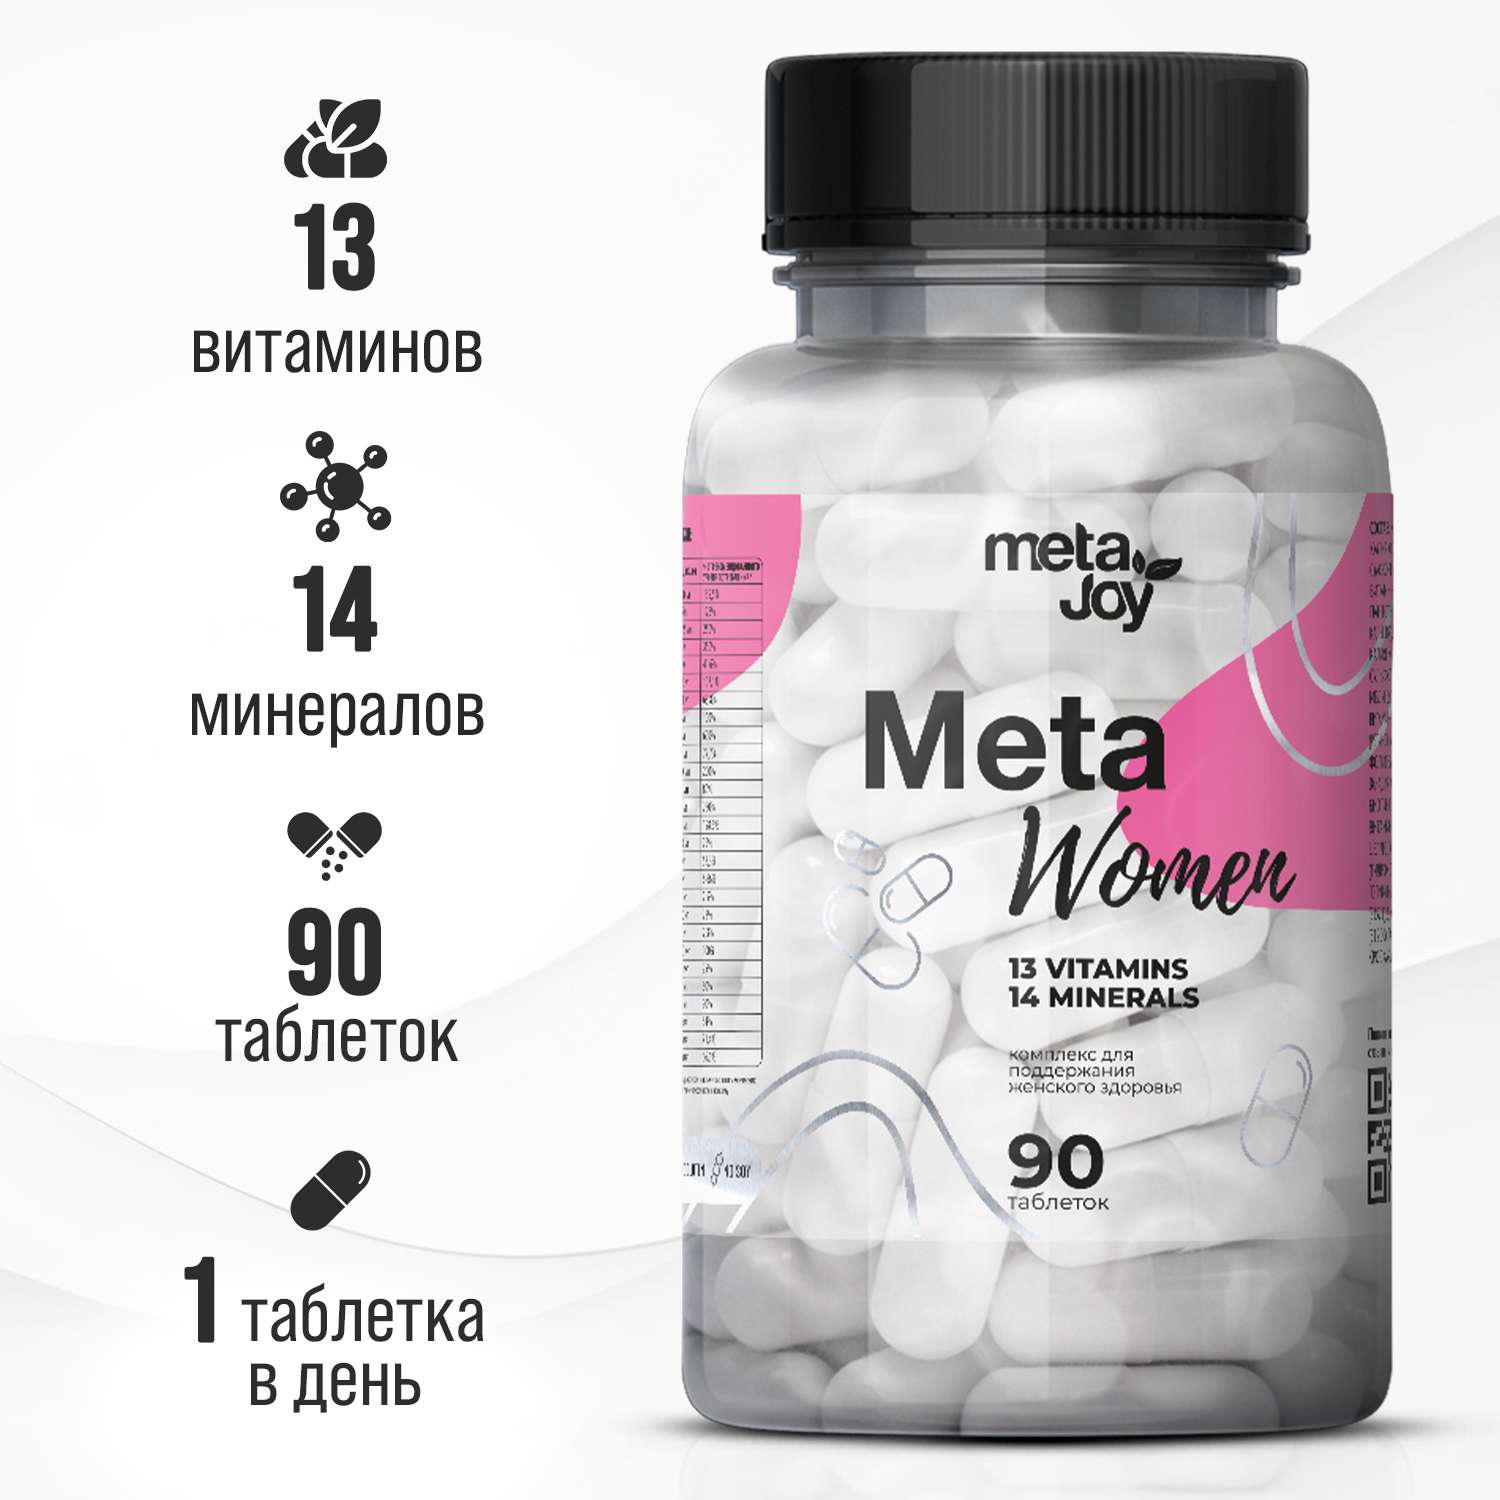 Витаминно-минеральный комплекс MetaJoy для женщин Meta Women 90 таблеток - фото 1